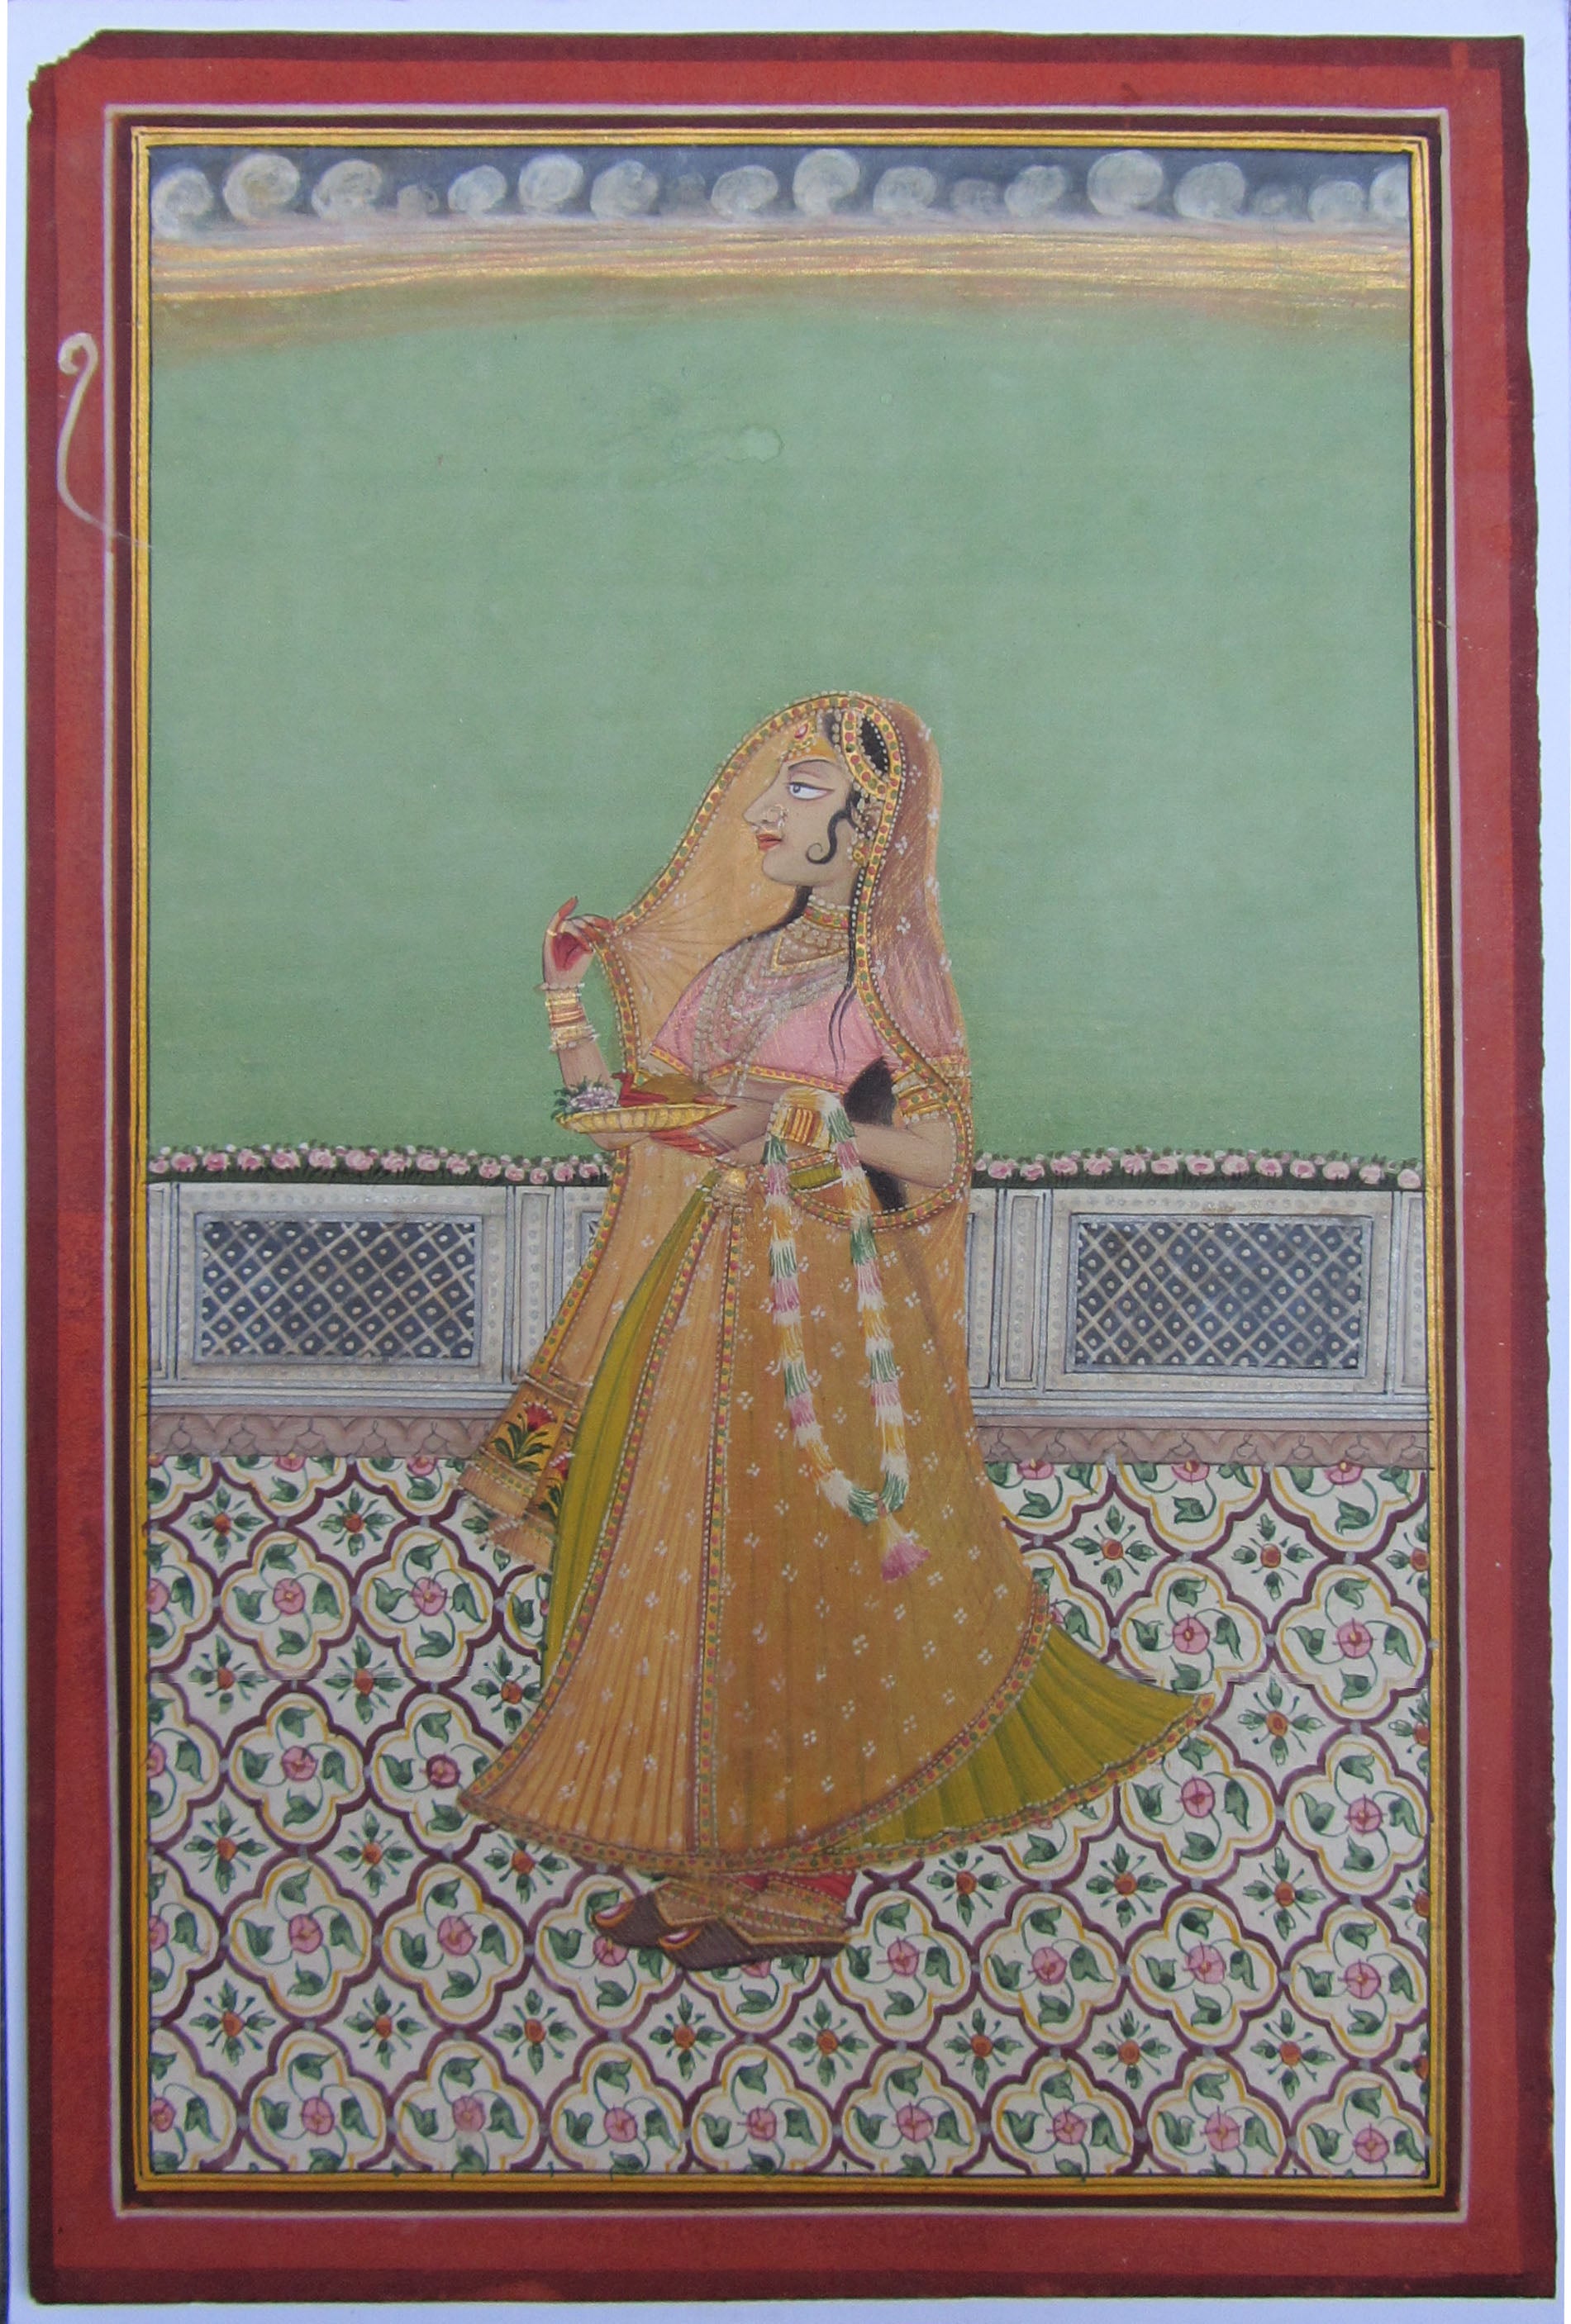 Ragini Original Art Paper Painting